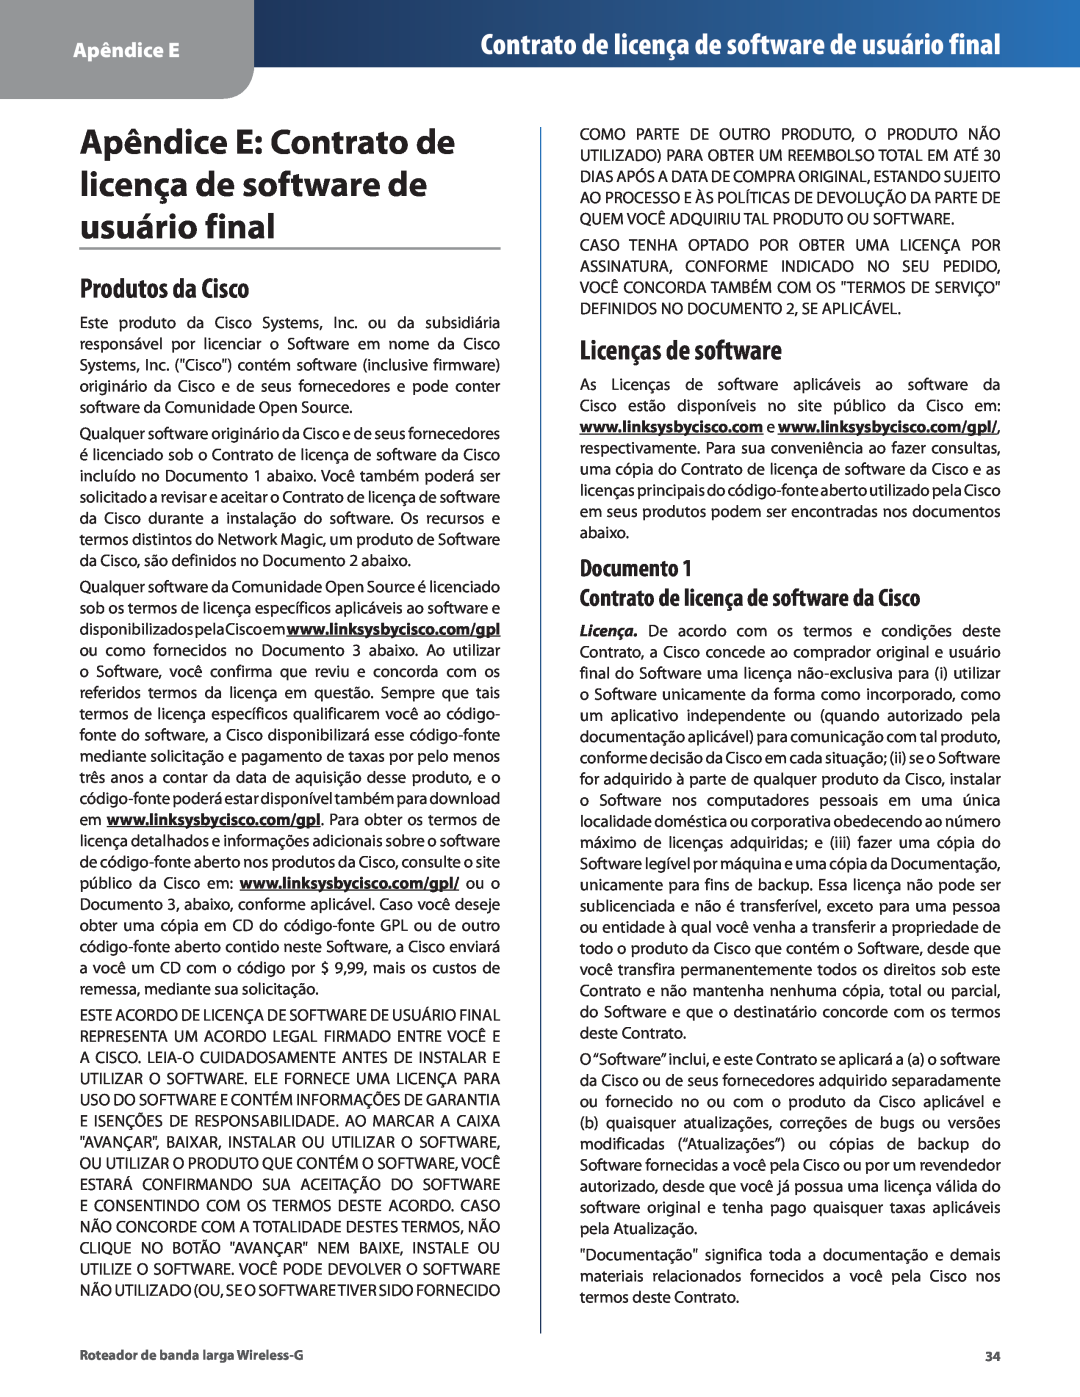 Cisco Systems WRT54G2 Apêndice E Contrato de licença de software de usuário final, Produtos da Cisco, Licenças de software 